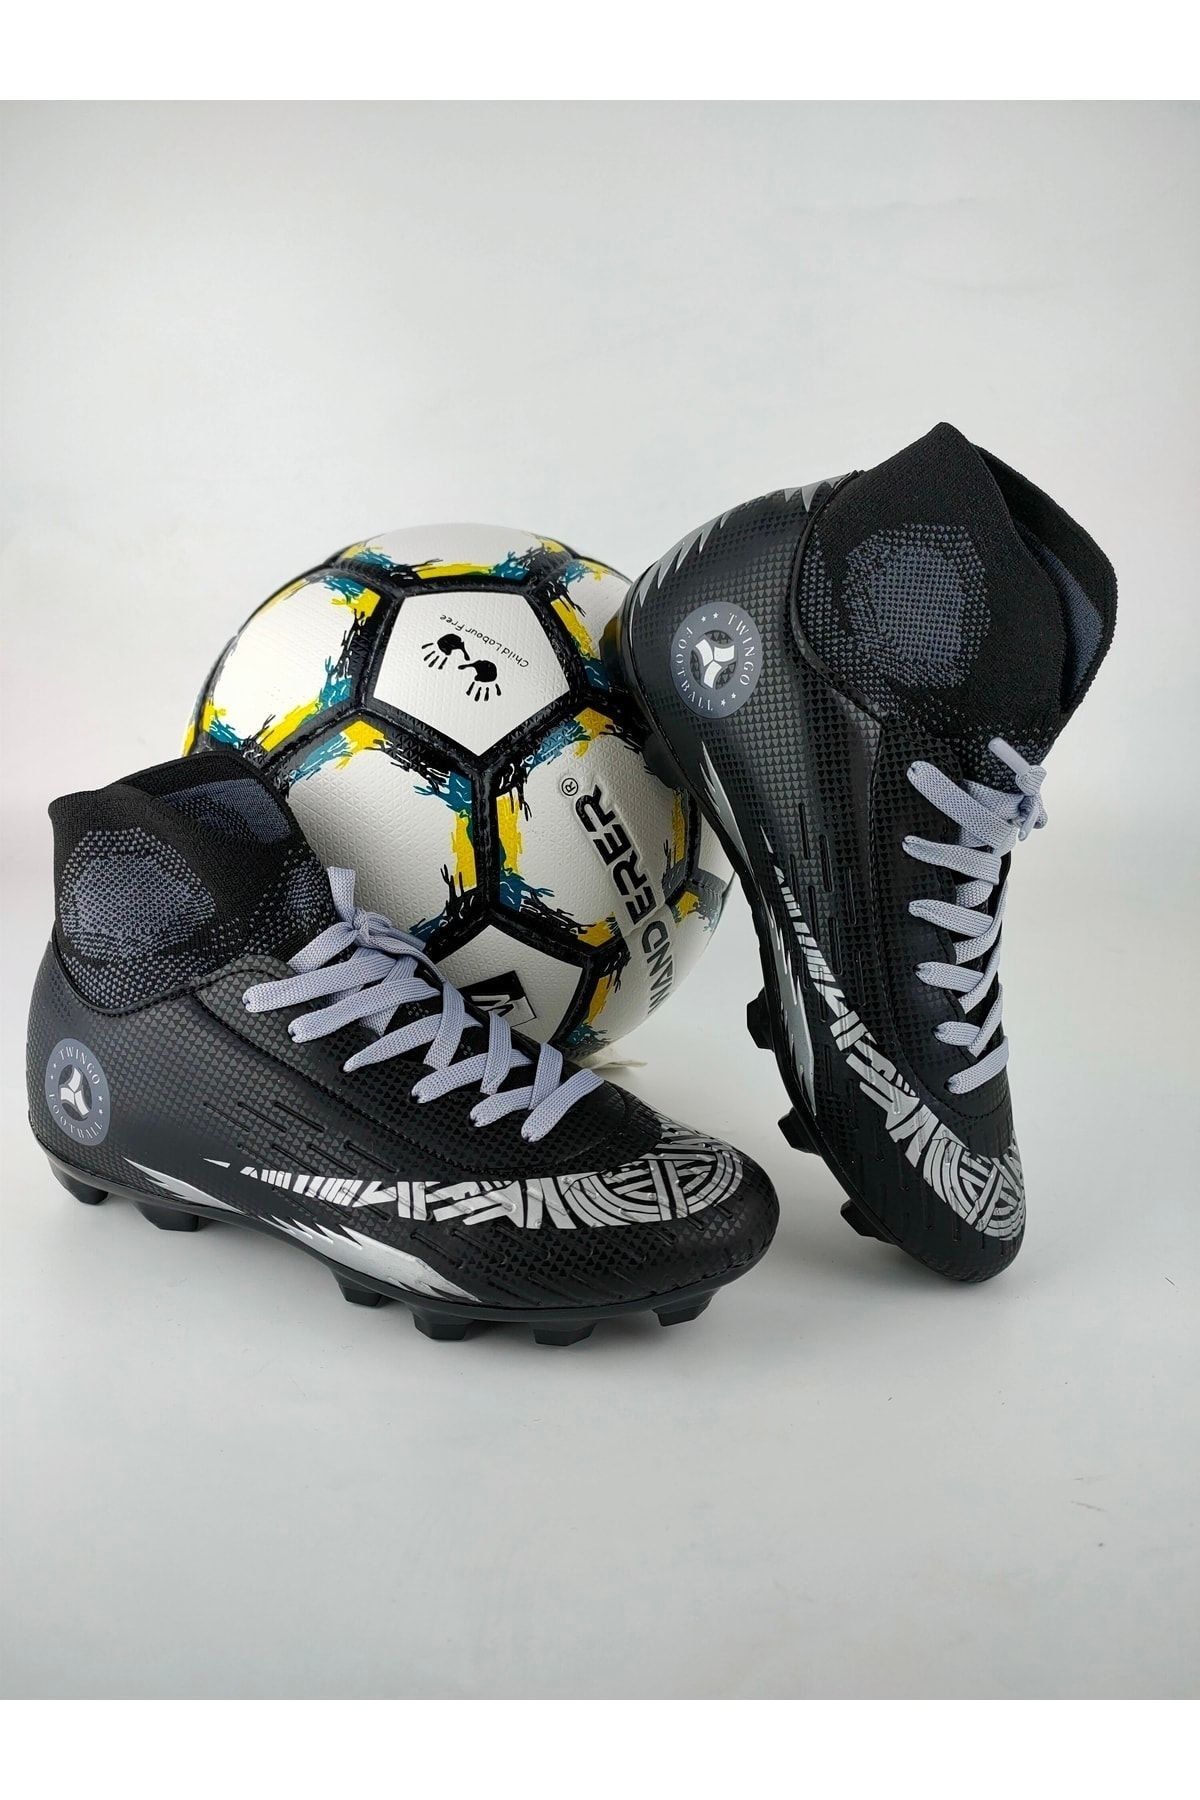 Amanal Bilekli Çocuk Çoraplı Krampon Futbol Ayakkabısı Dişli Çim Saha Halı Saha 142 Siyah Gümüş